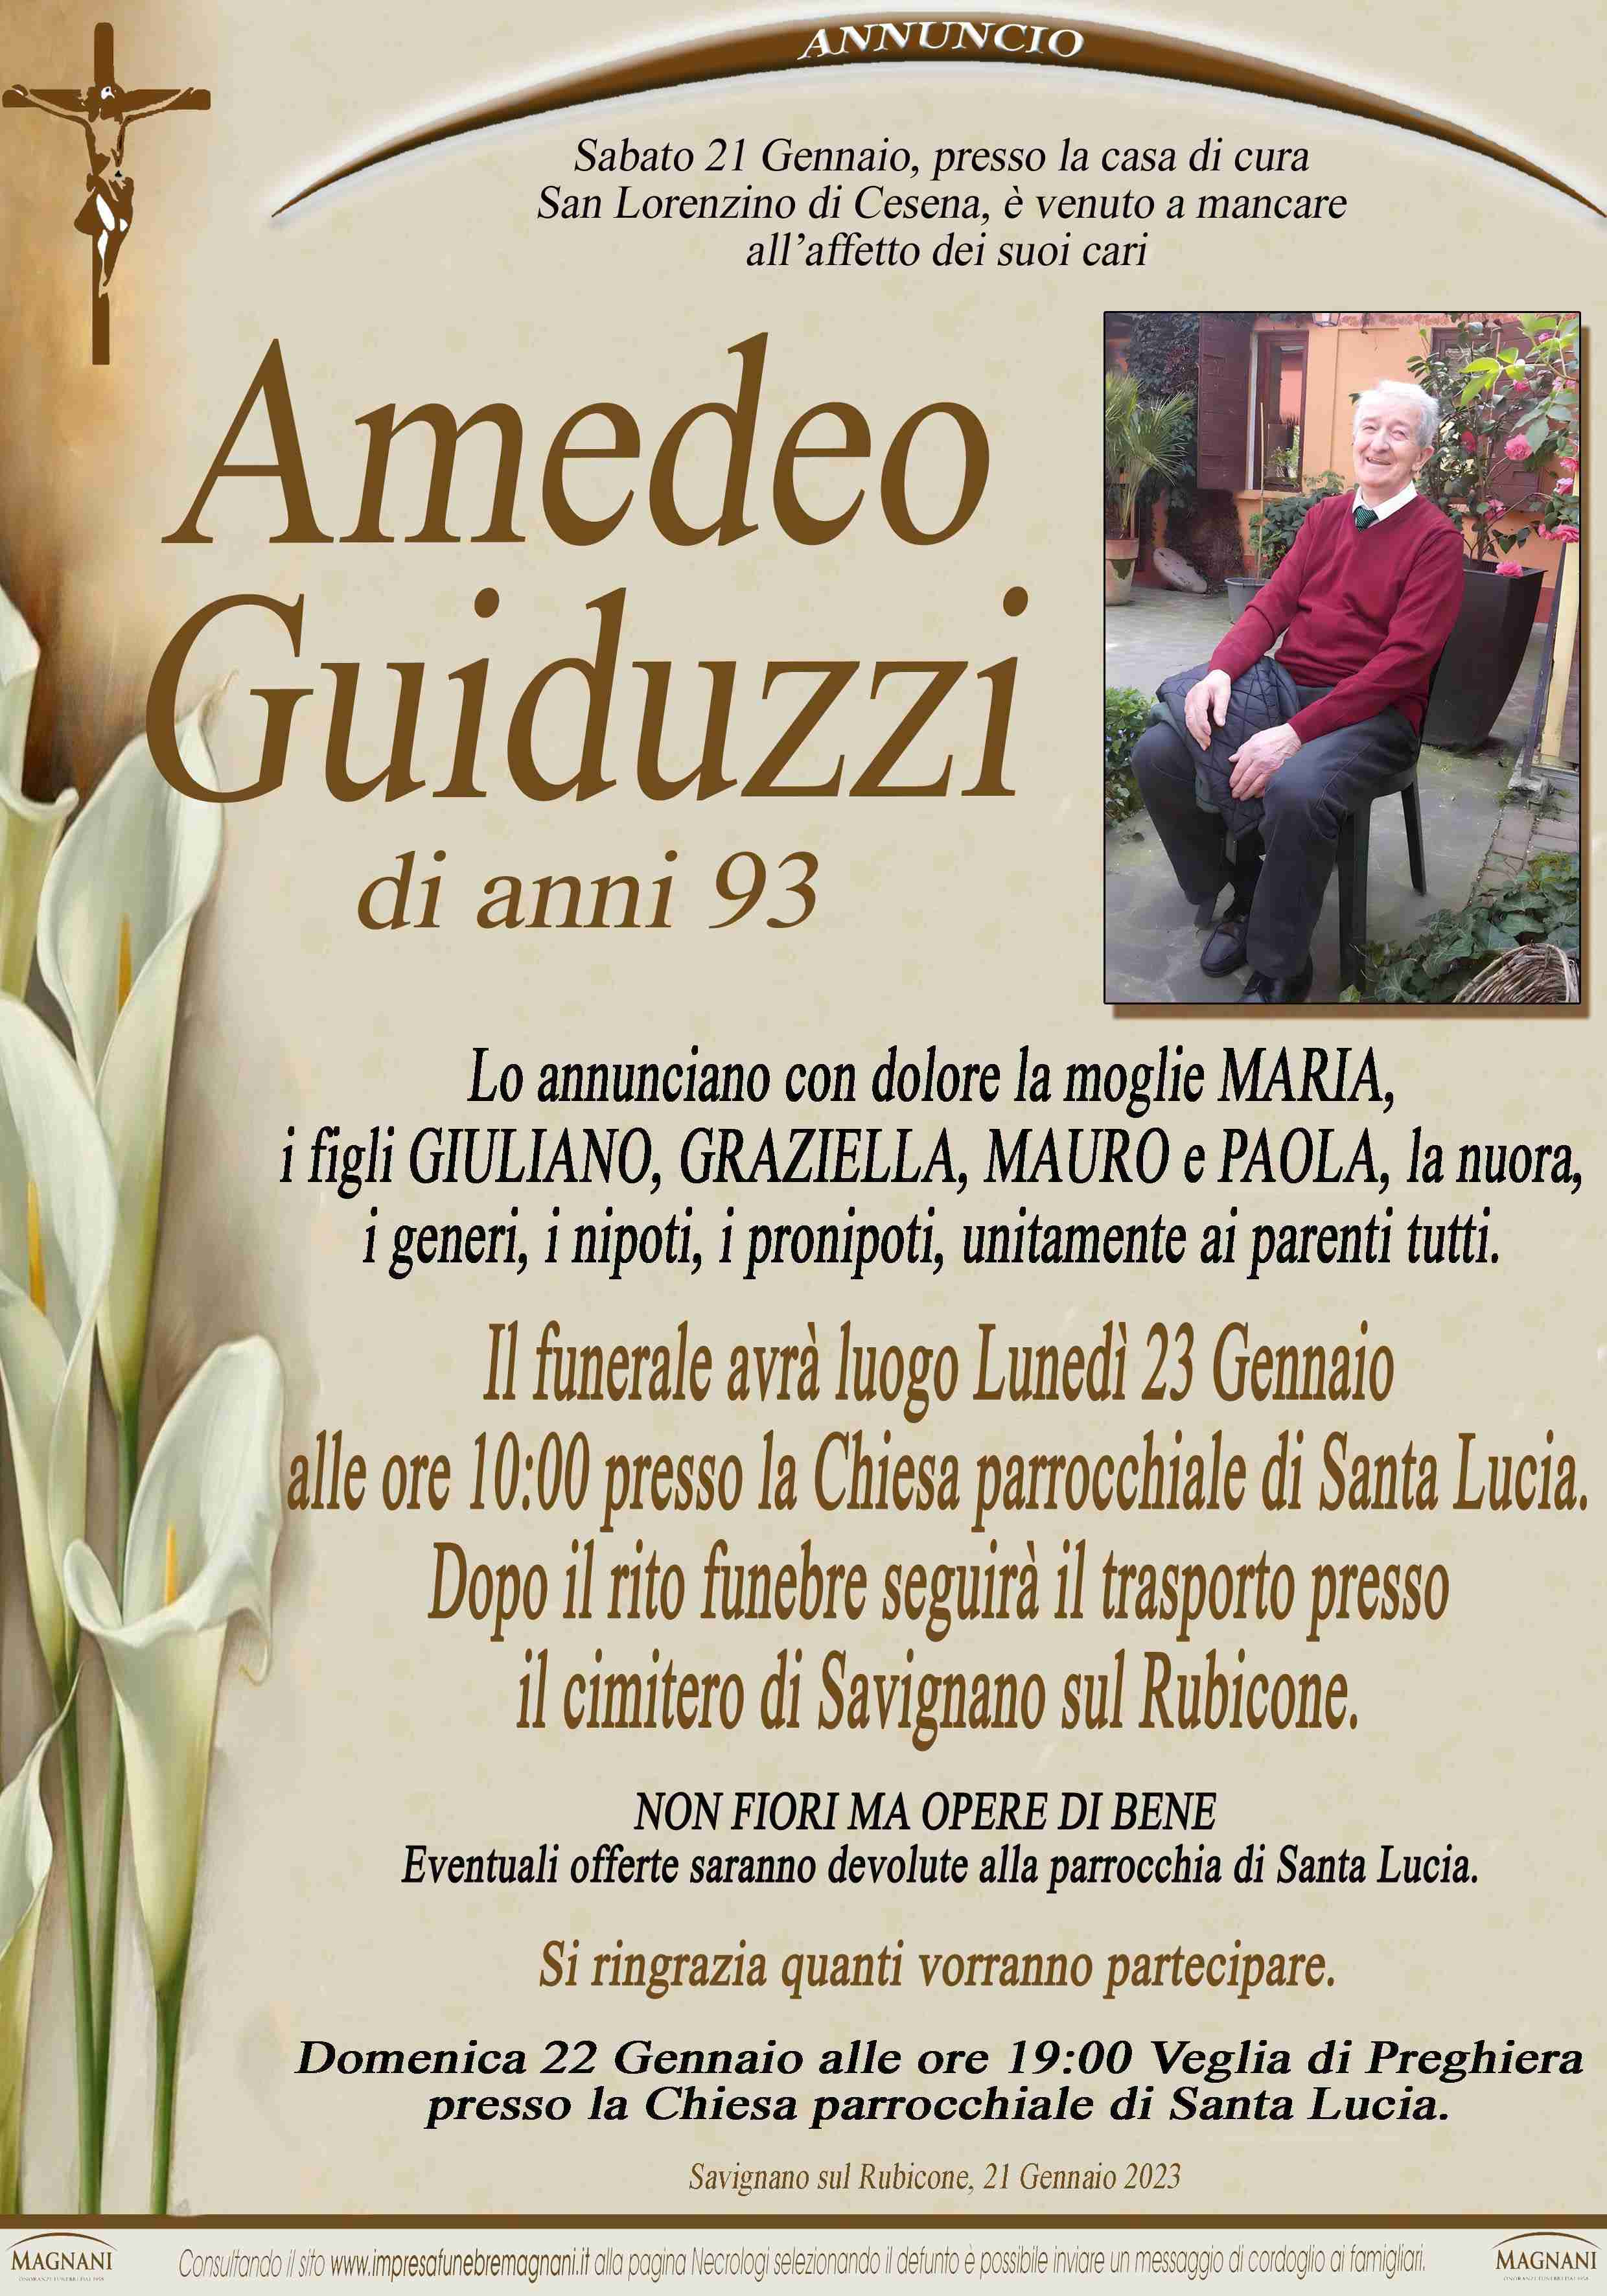 Amedeo Guiduzzi